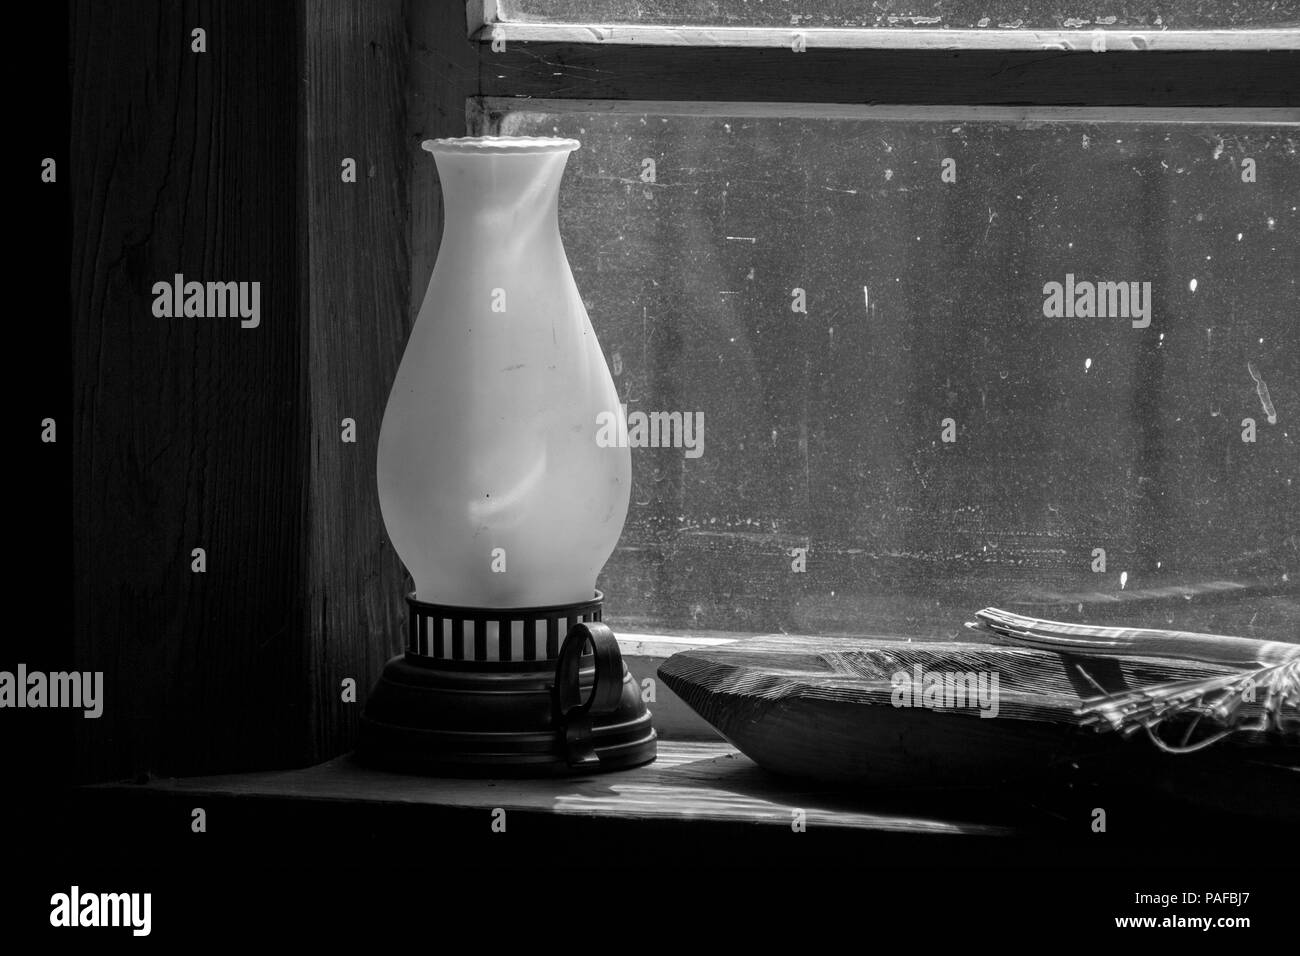 Magere bedeutet: Eine einfache schwarz-weiß Foto von einer Laterne, vintage Fenster und ein Graben gestaltete hölzerne Schüssel. Starke Kontraste und Schatten. Stockfoto